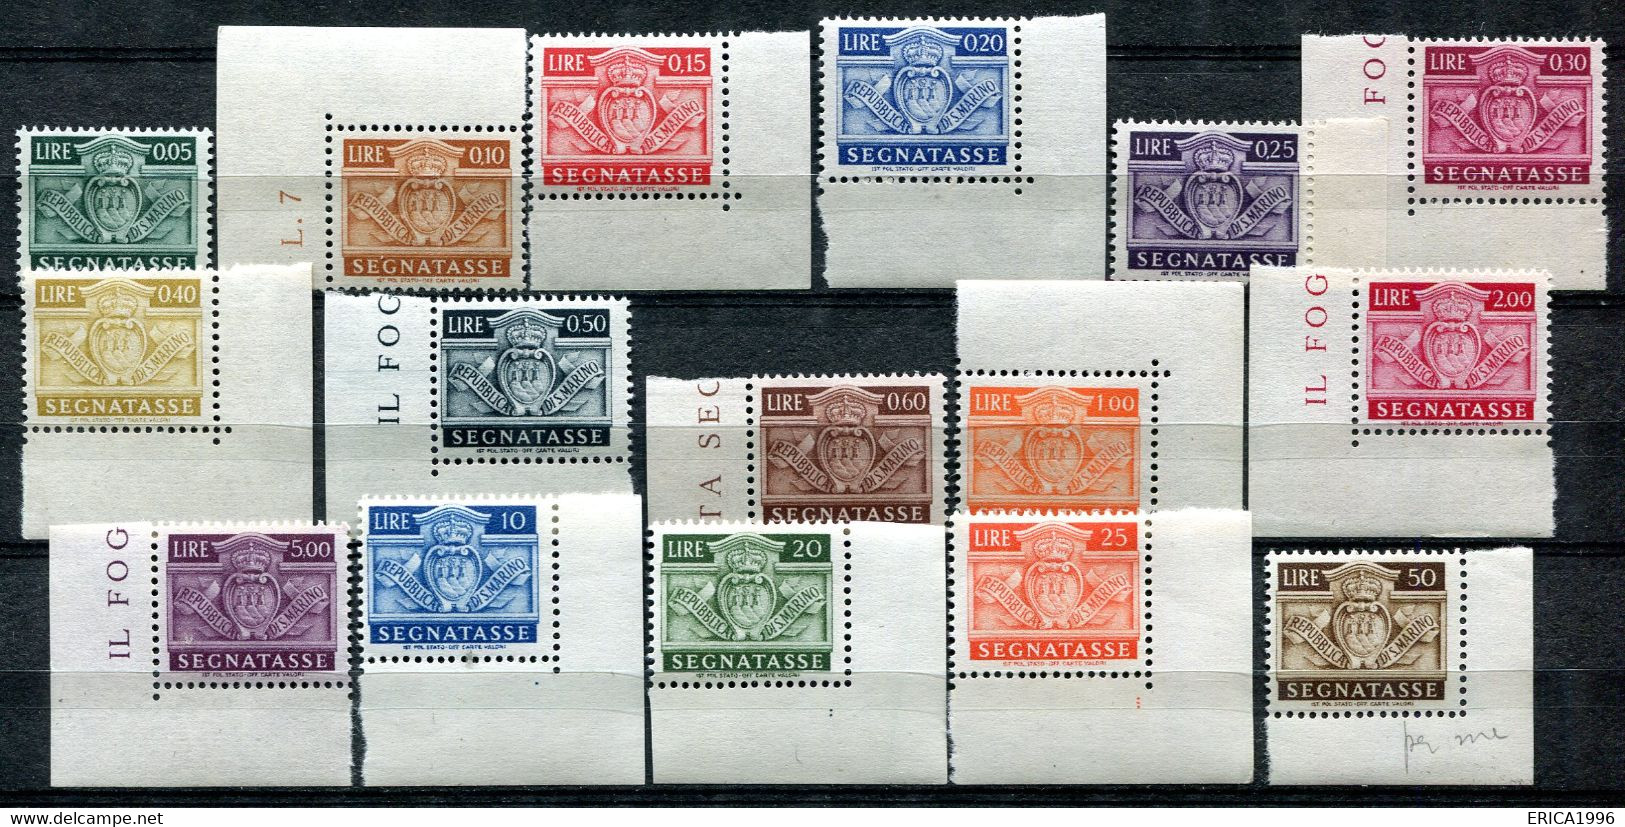 Z3548 SAN MARINO 1945 Segnatasse, MNH**, Serie Completa, Valore Catalogo € 60, Ottime Condizioni - Postage Due